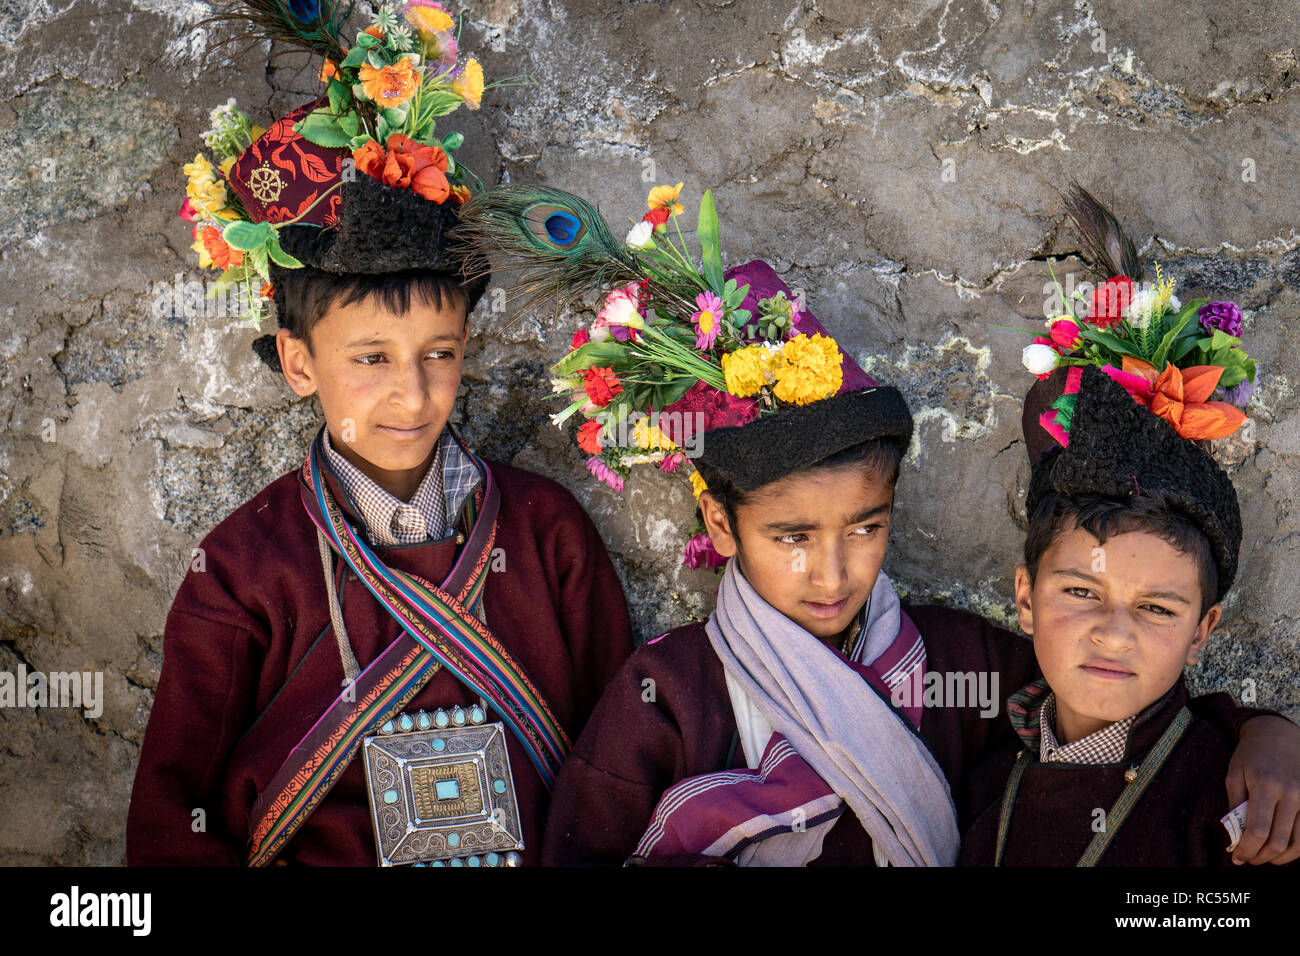 Le Ladakh, Inde - le 29 août 2018 : Groupe de garçons indigènes au Ladakh, Inde. Rédaction d'illustration. Banque D'Images